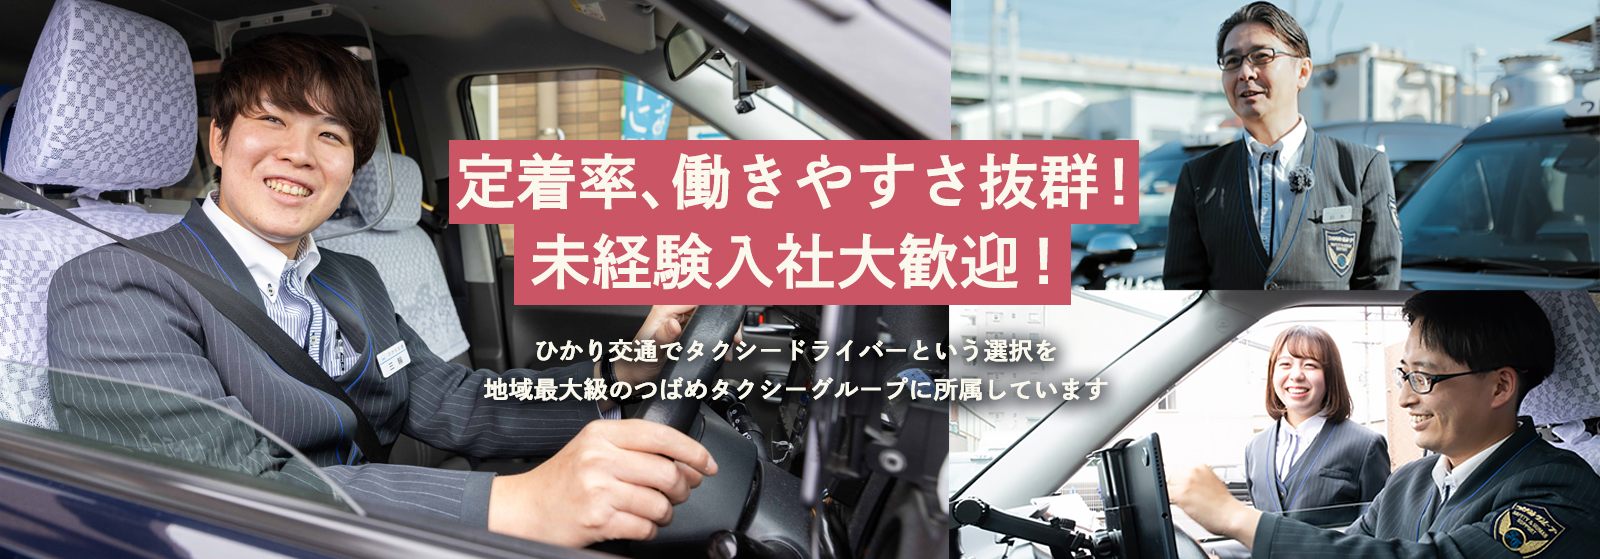 ひかり交通は働きやすさを追求する名古屋のタクシー会社です